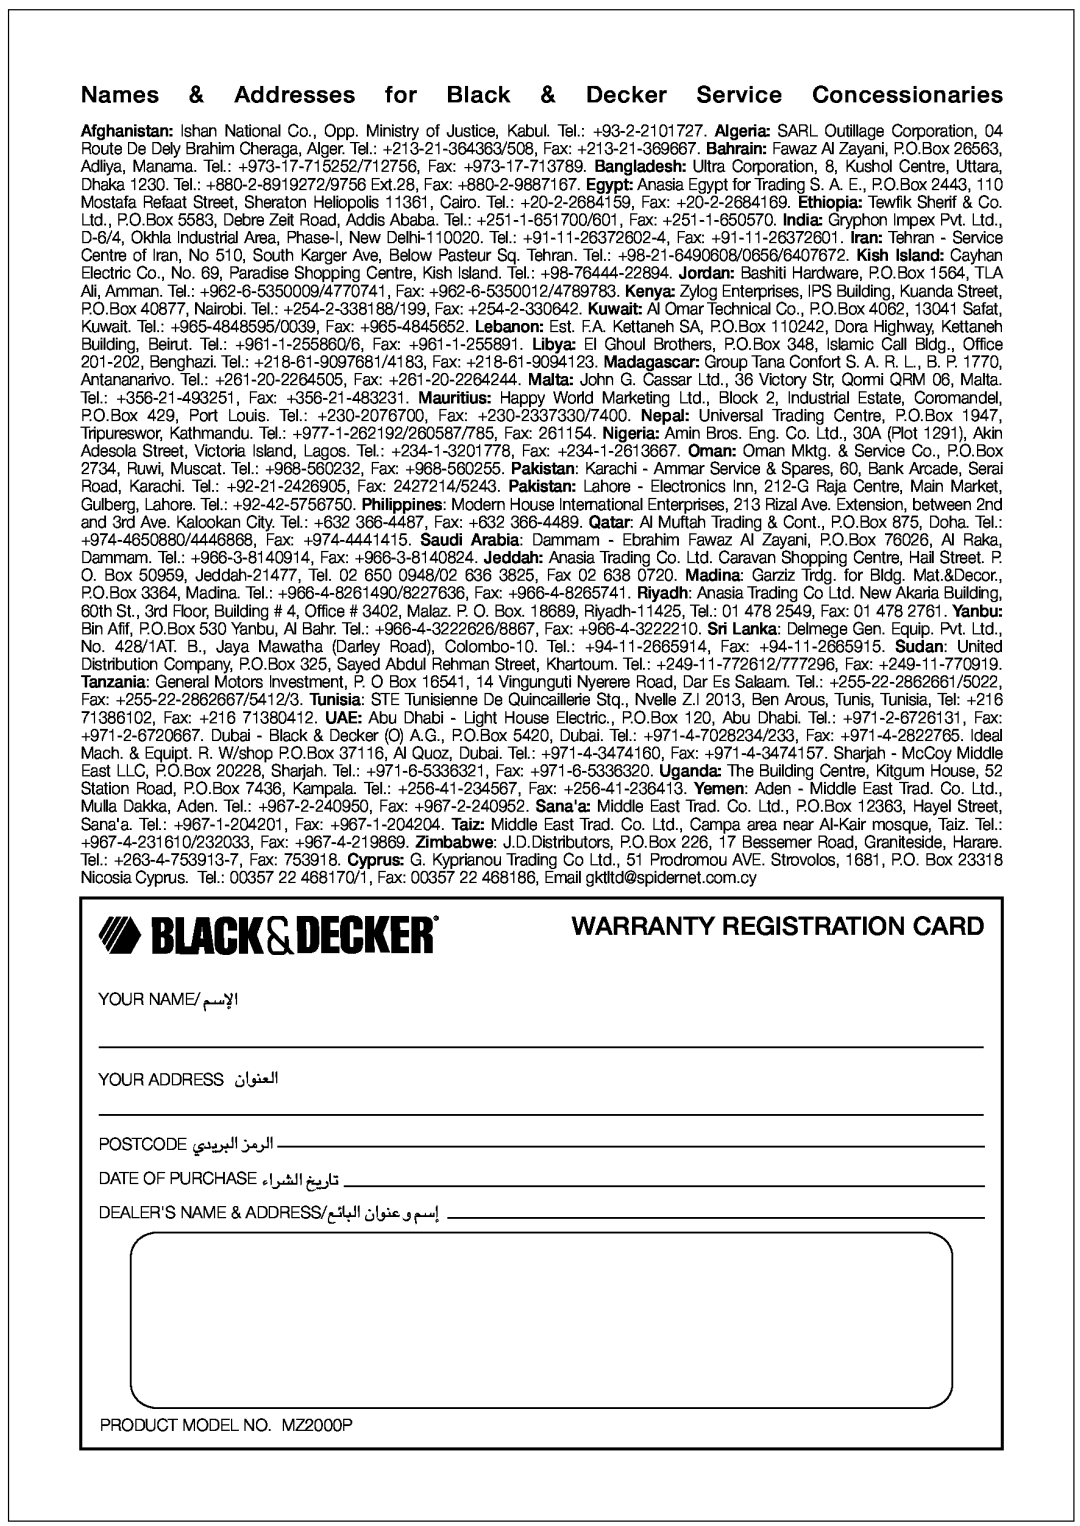 Black & Decker MZ2000P manual Warranty Registration Card, «ùßr, FMu«Ê∞«, Uzl∞∂« ´Mu«Ê Ë ßr≈ 